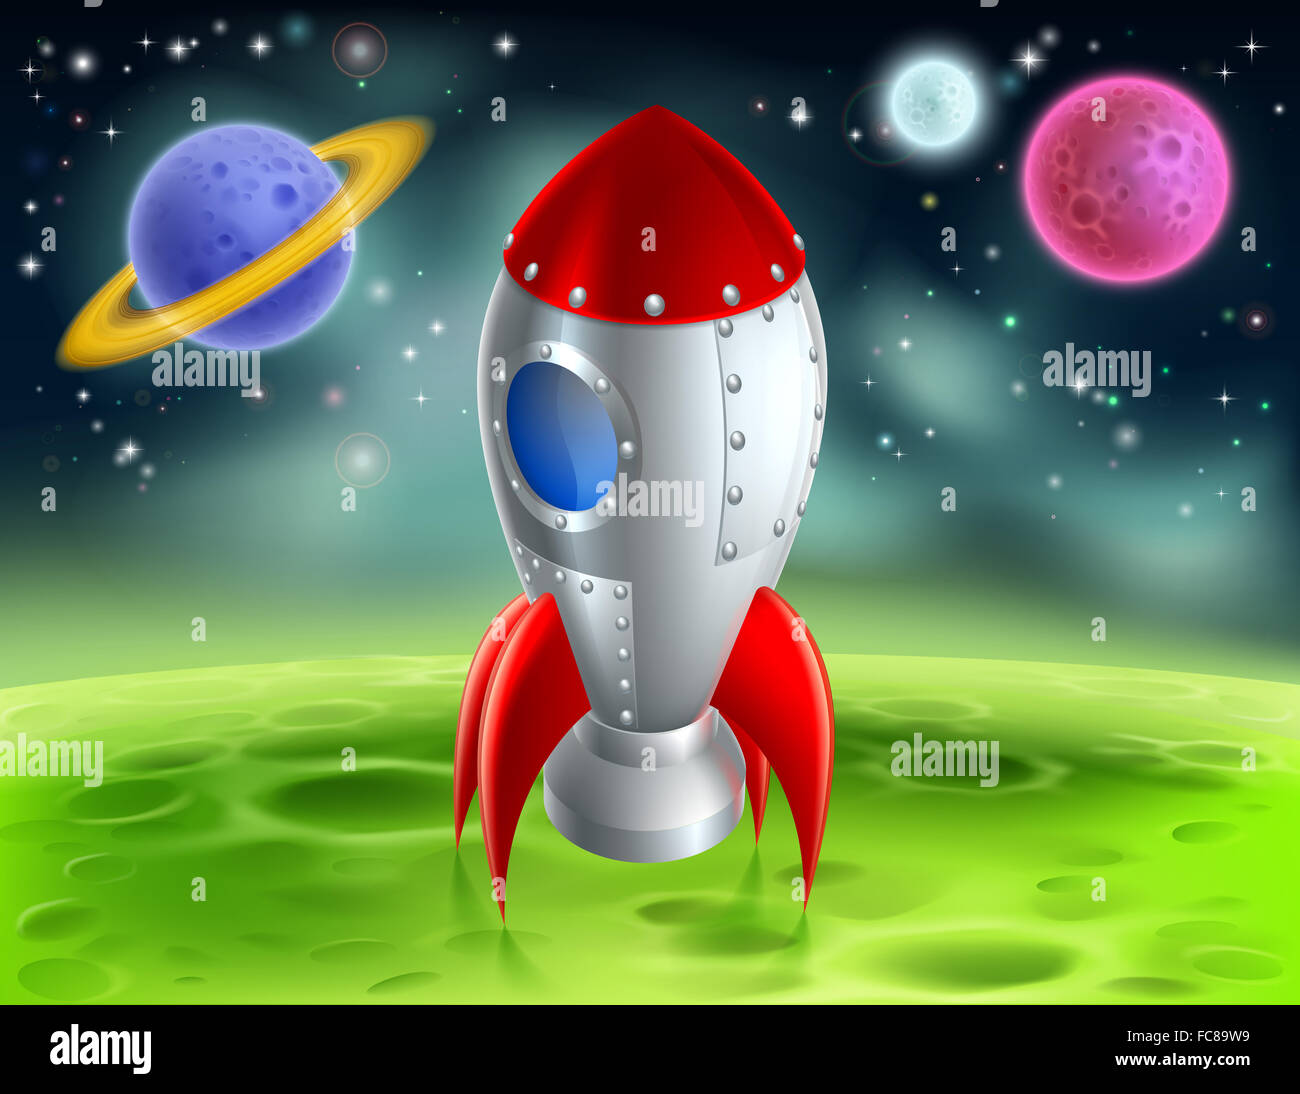 Une illustration d'un dessin de l'espace rétro fusée ou navire de l'espace atterrit sur une planète ou lune exotiques avec les planètes et les étoiles en th Banque D'Images